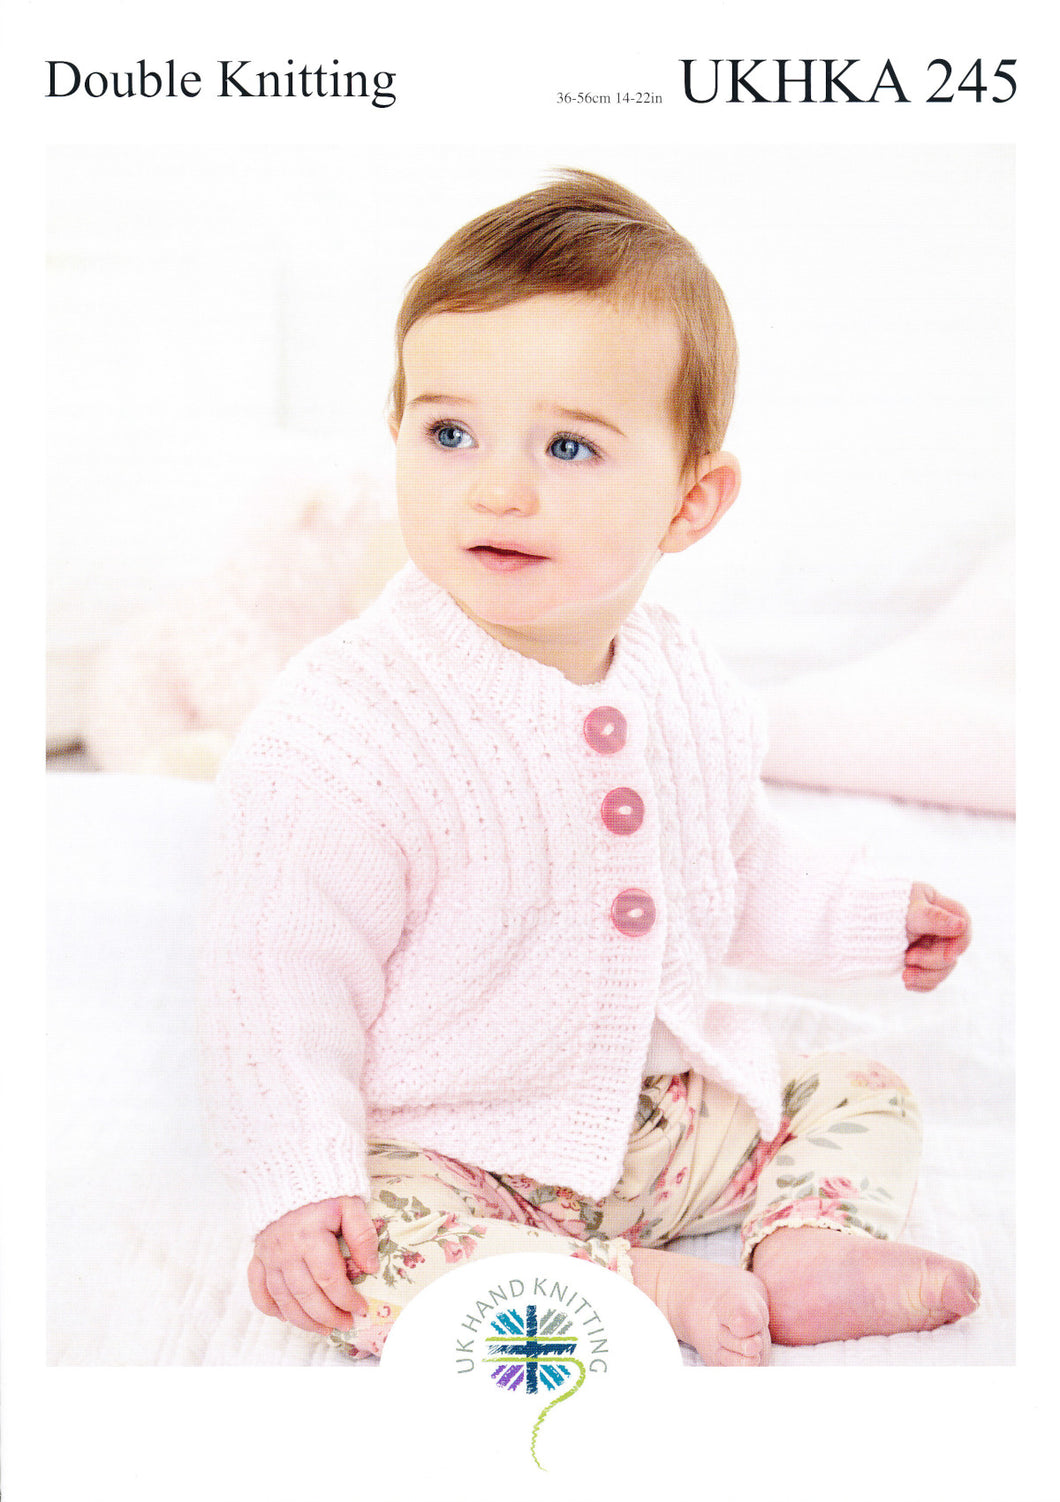 UKHKA 245 Double Knit Knitting Pattern - Baby Cardigan Jacket & Blanket